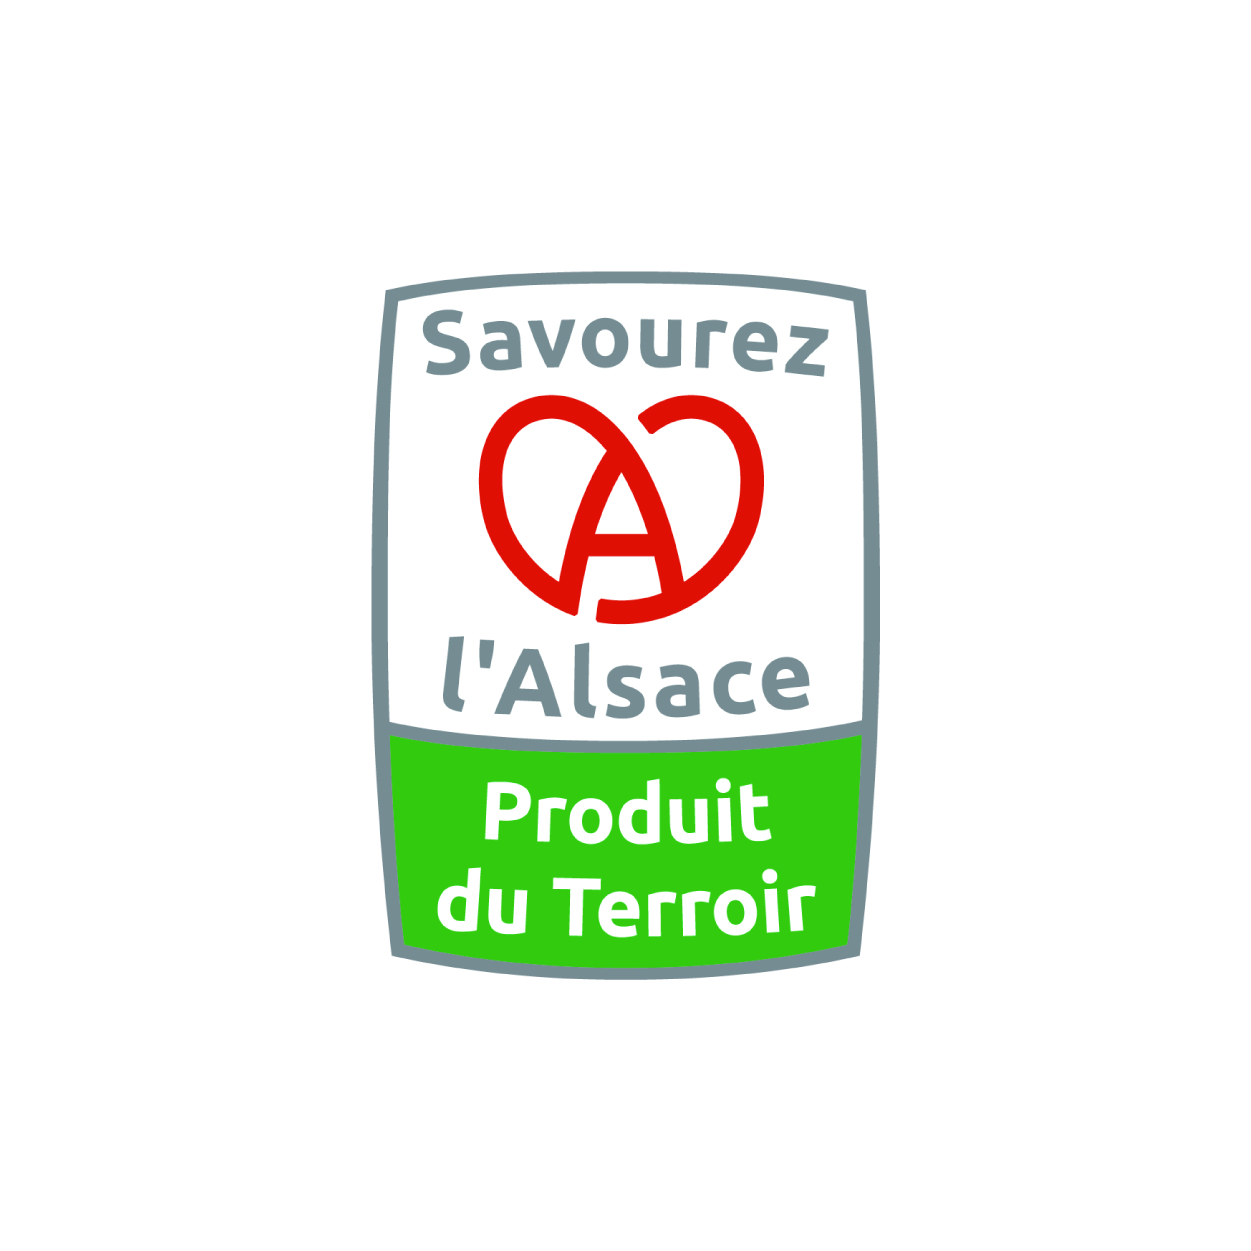 Savourez l'Alsace, Produit du Terroir.jpg